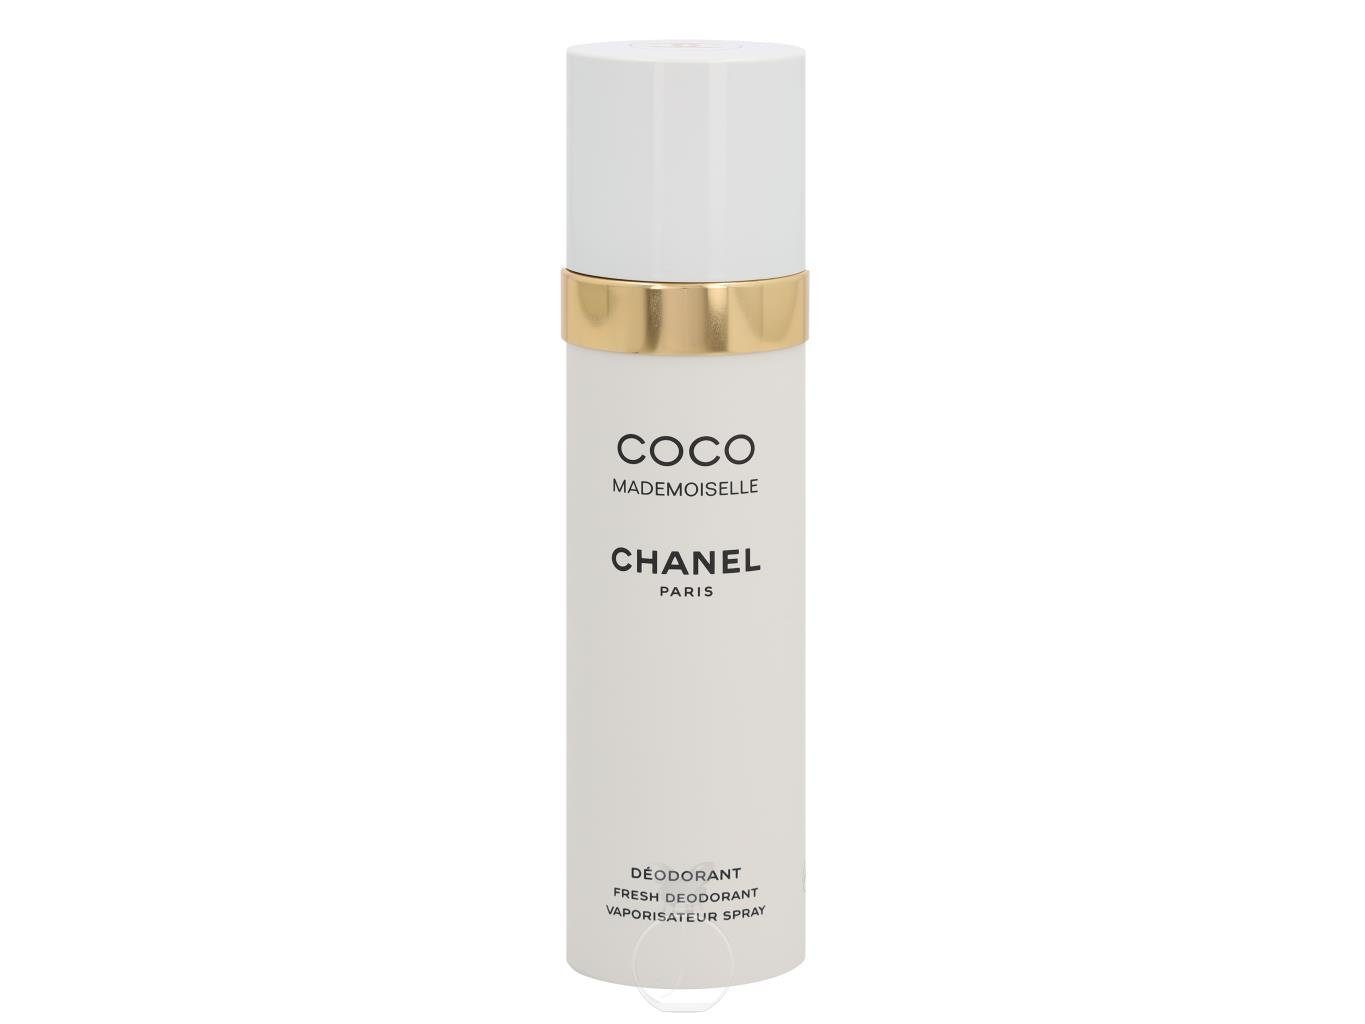 Coco 100 ml Körperpflegeduft CHANEL Deodorant Chanel Mademoiselle